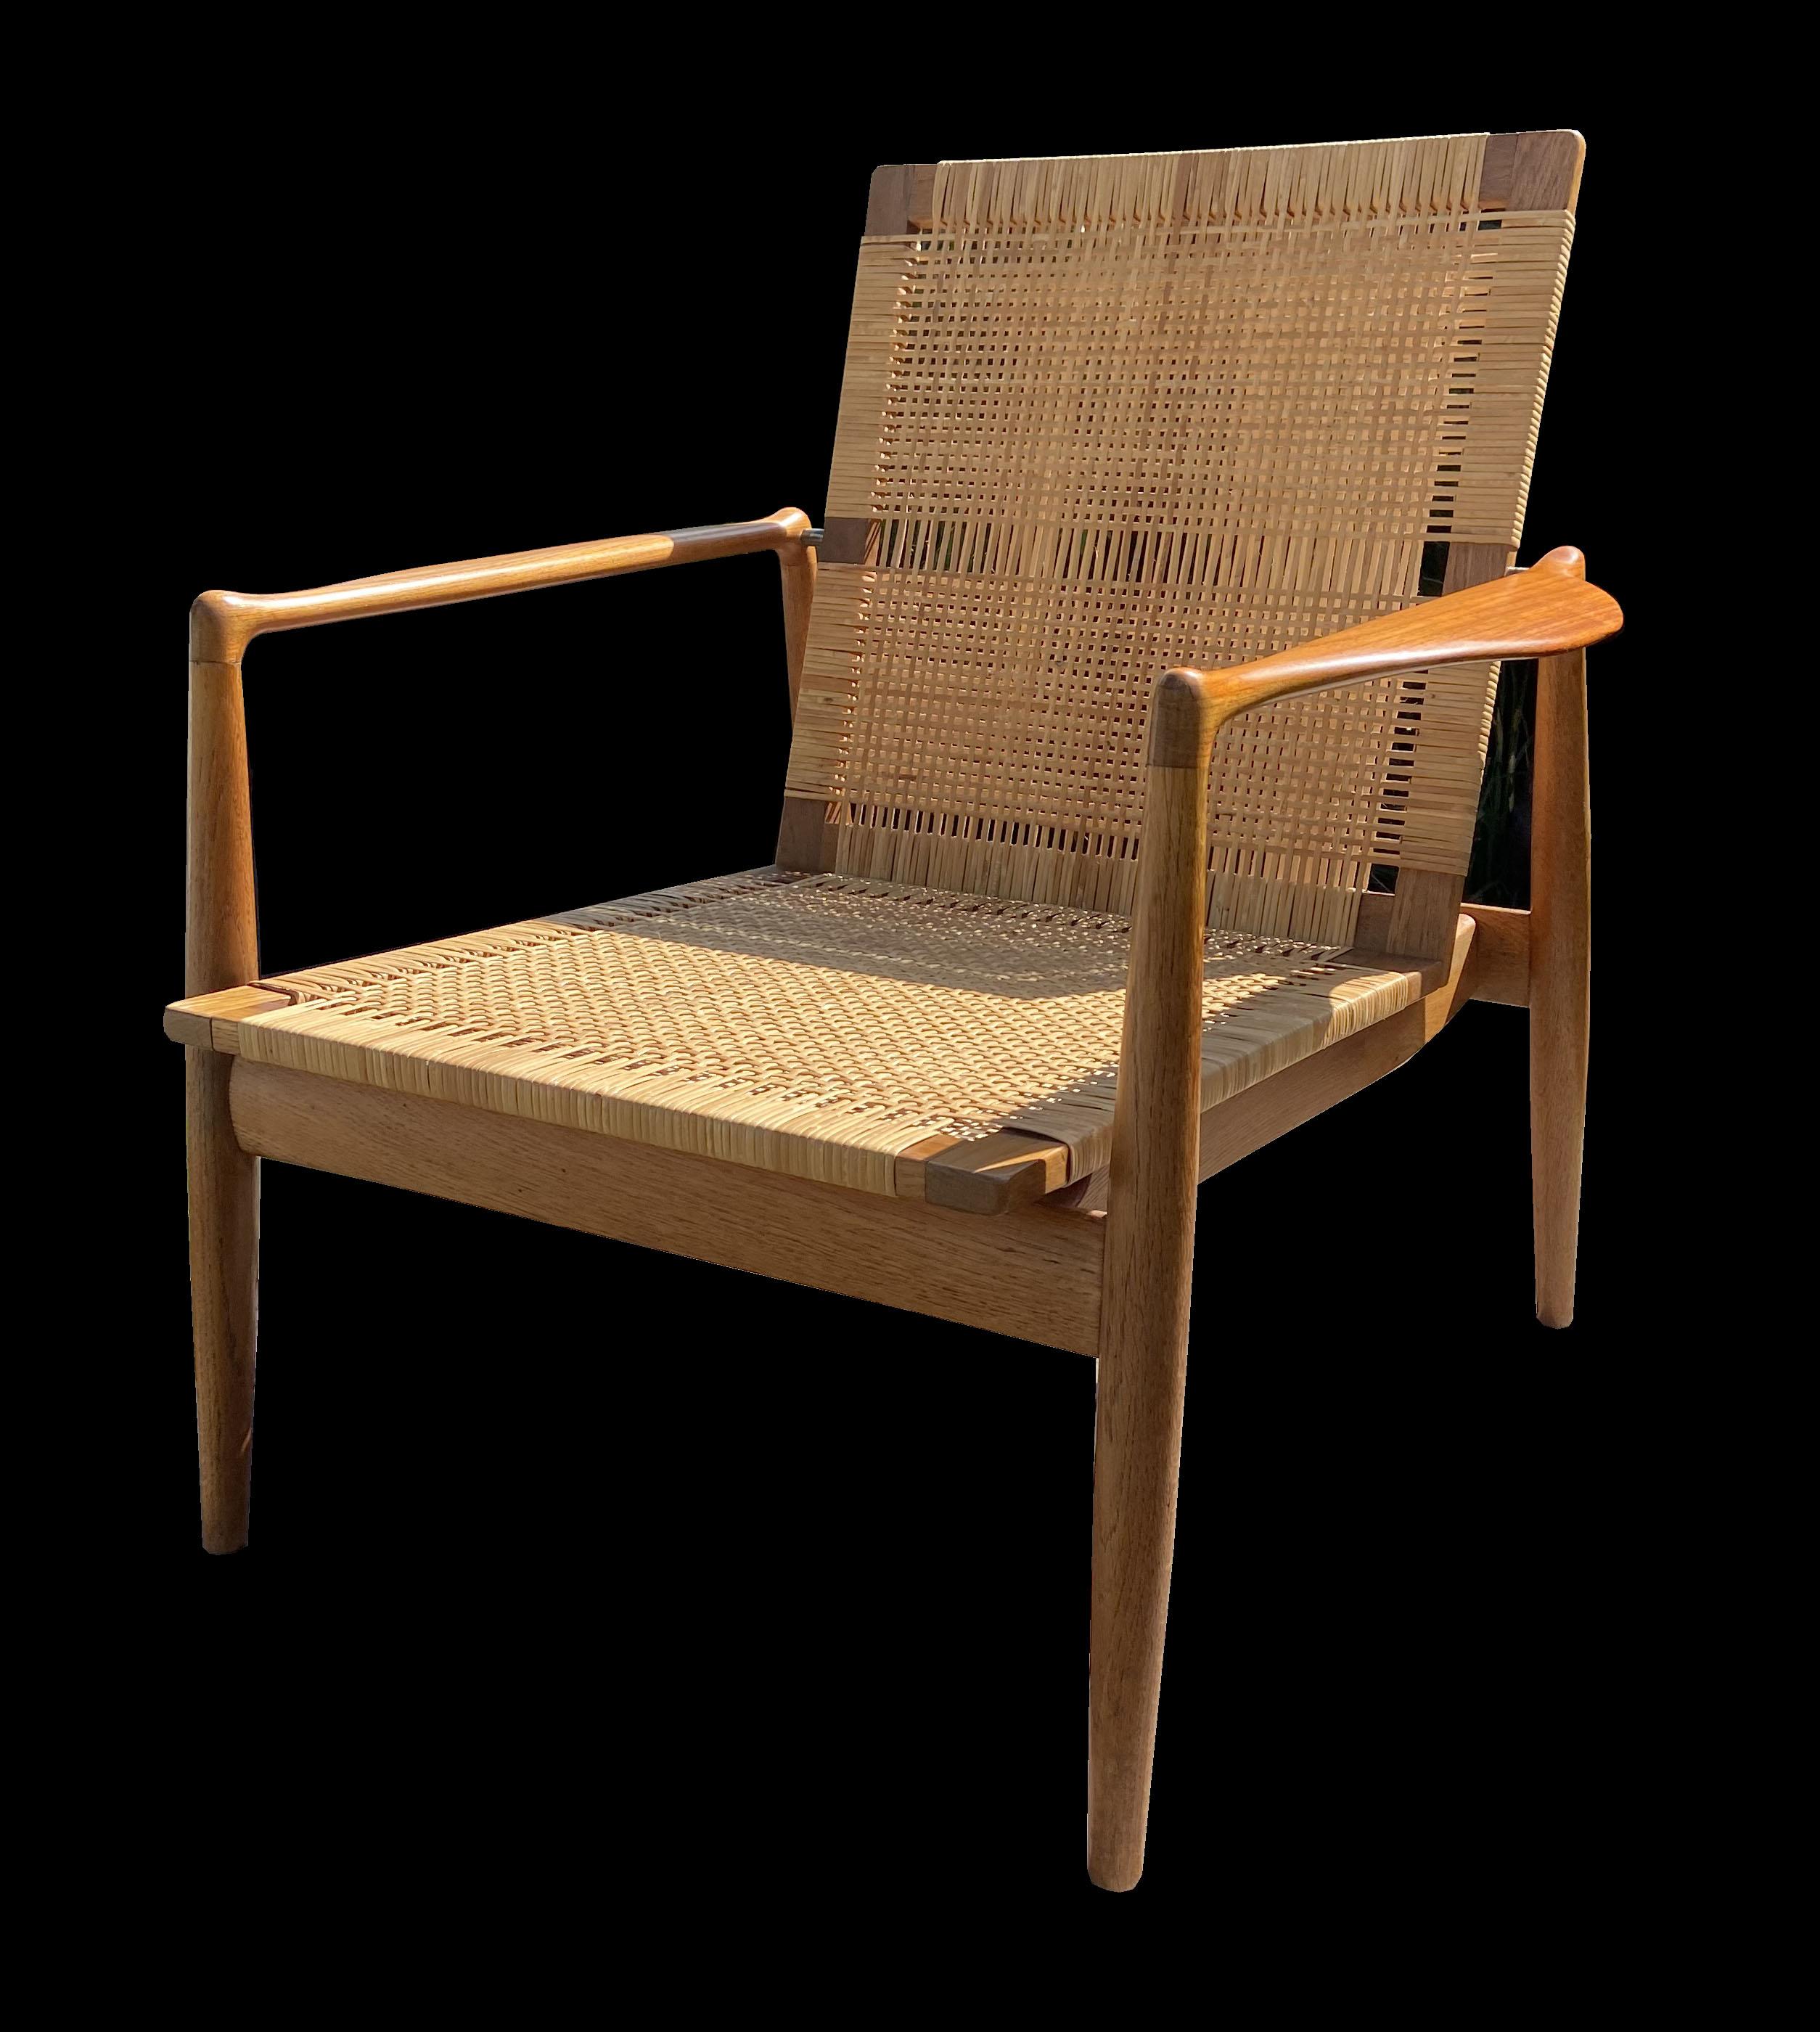 Il s'agit d'un très bel exemplaire original de cette rare chaise longue, conçue par Finn Juhls et produite par Soren Willadsen. La structure de la chaise est en chêne, les accoudoirs sont en teck et l'assise et le dossier sont en rotin.